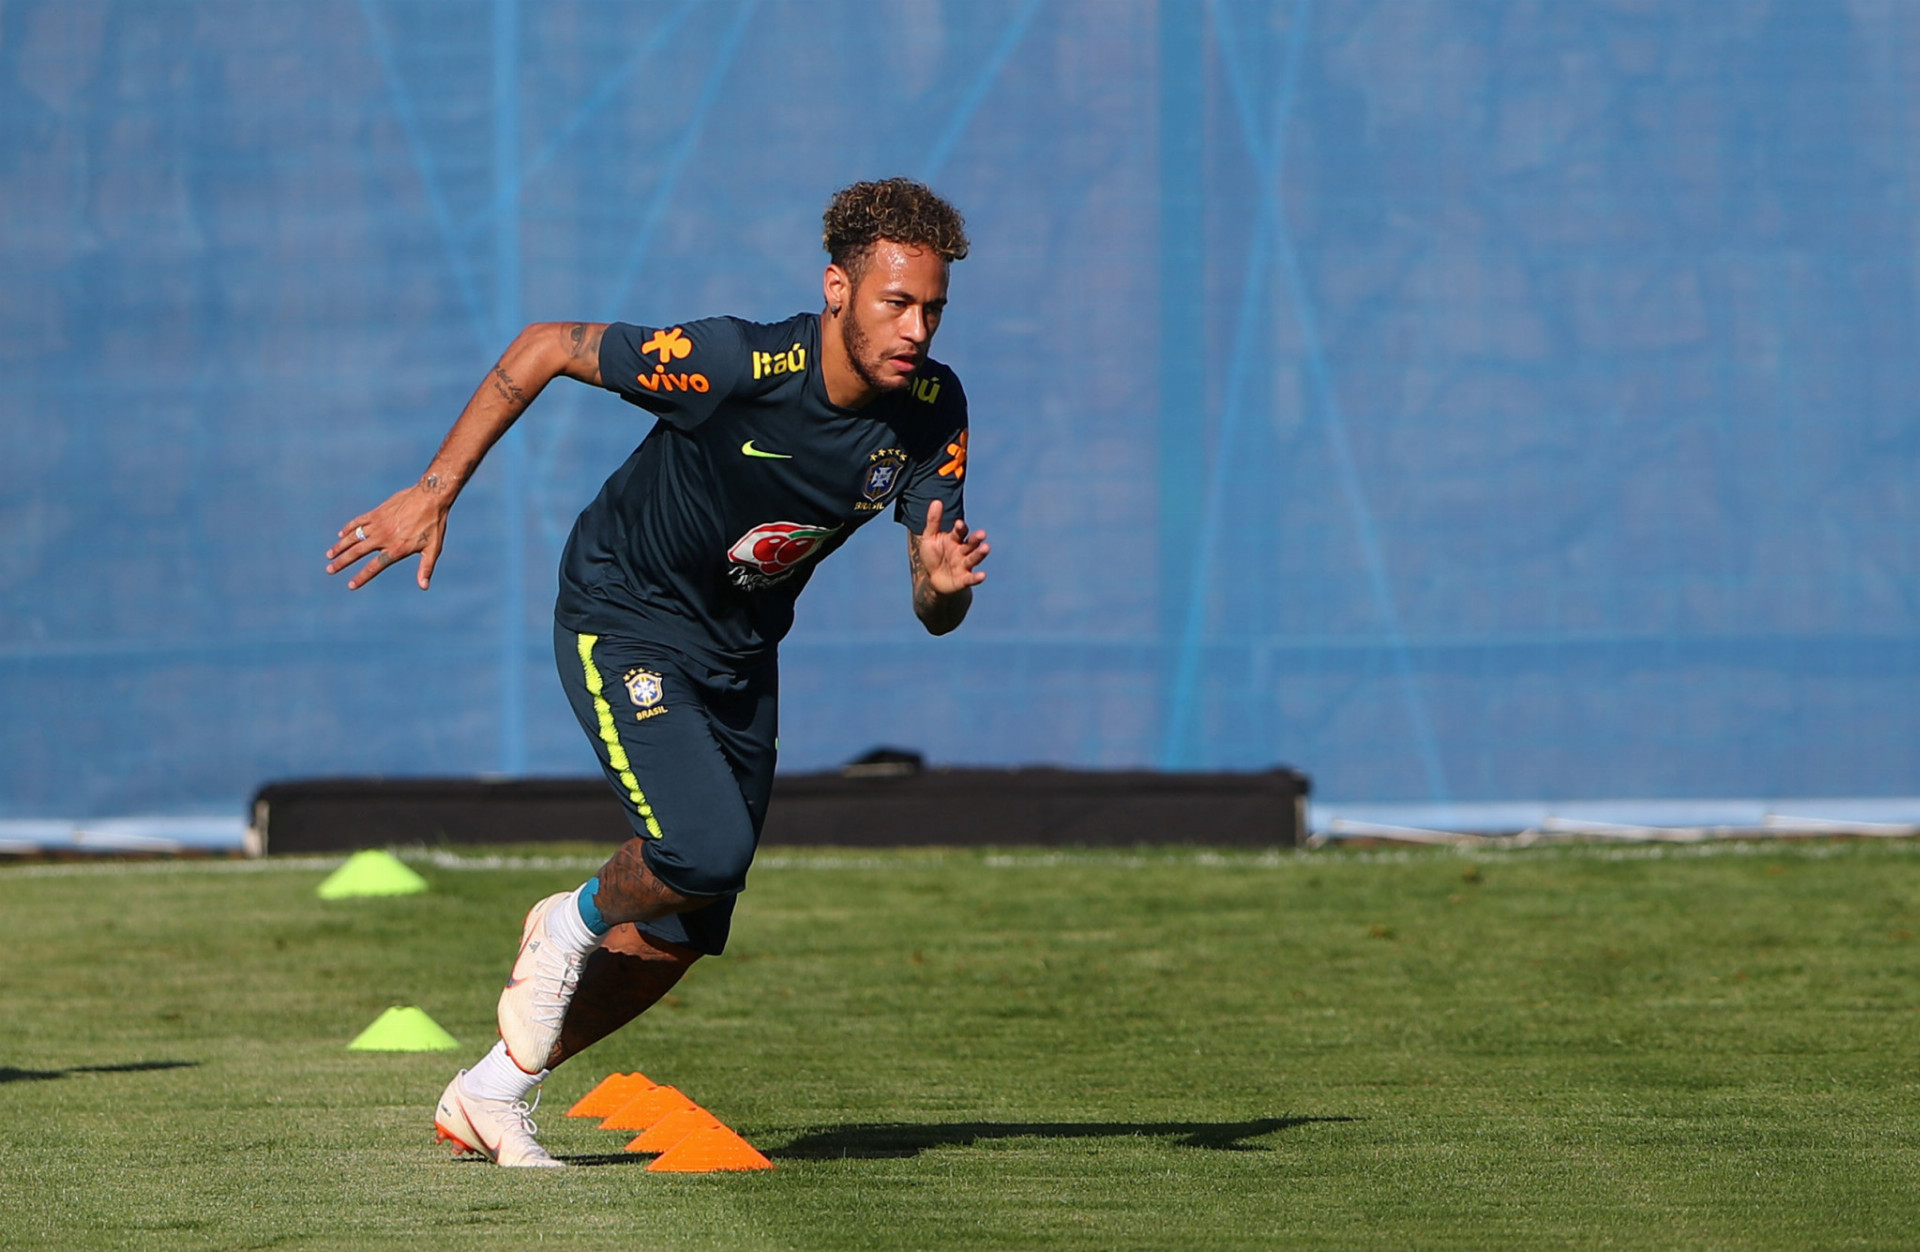 Brazílska hviezda Neymar je najdrahším hráčom na turnaji. Prestúpil z FC Barcelona do Paríža Saint-Germain v auguste 2017 za rekordných 222 miliónov eur.